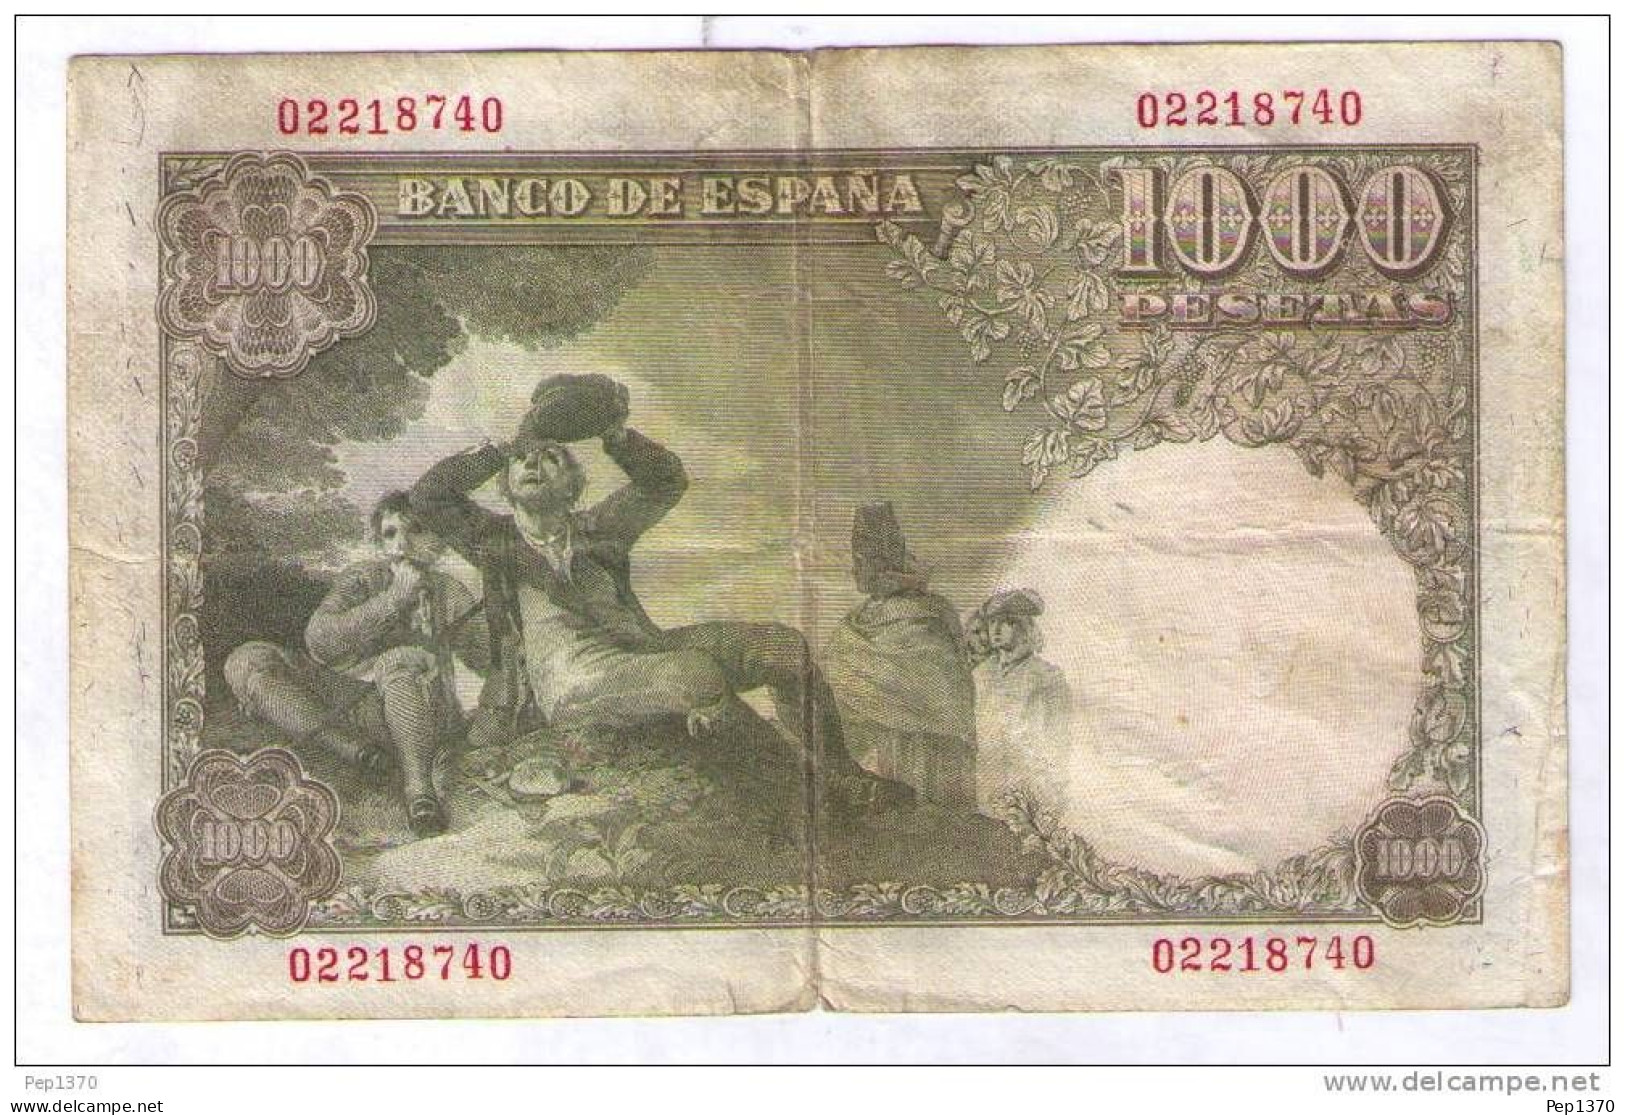 BILLETE DE 1000 PESETAS DE 1949 - RAMON DE SANTILLAN - USADO (VER FOTOS) - 1000 Peseten